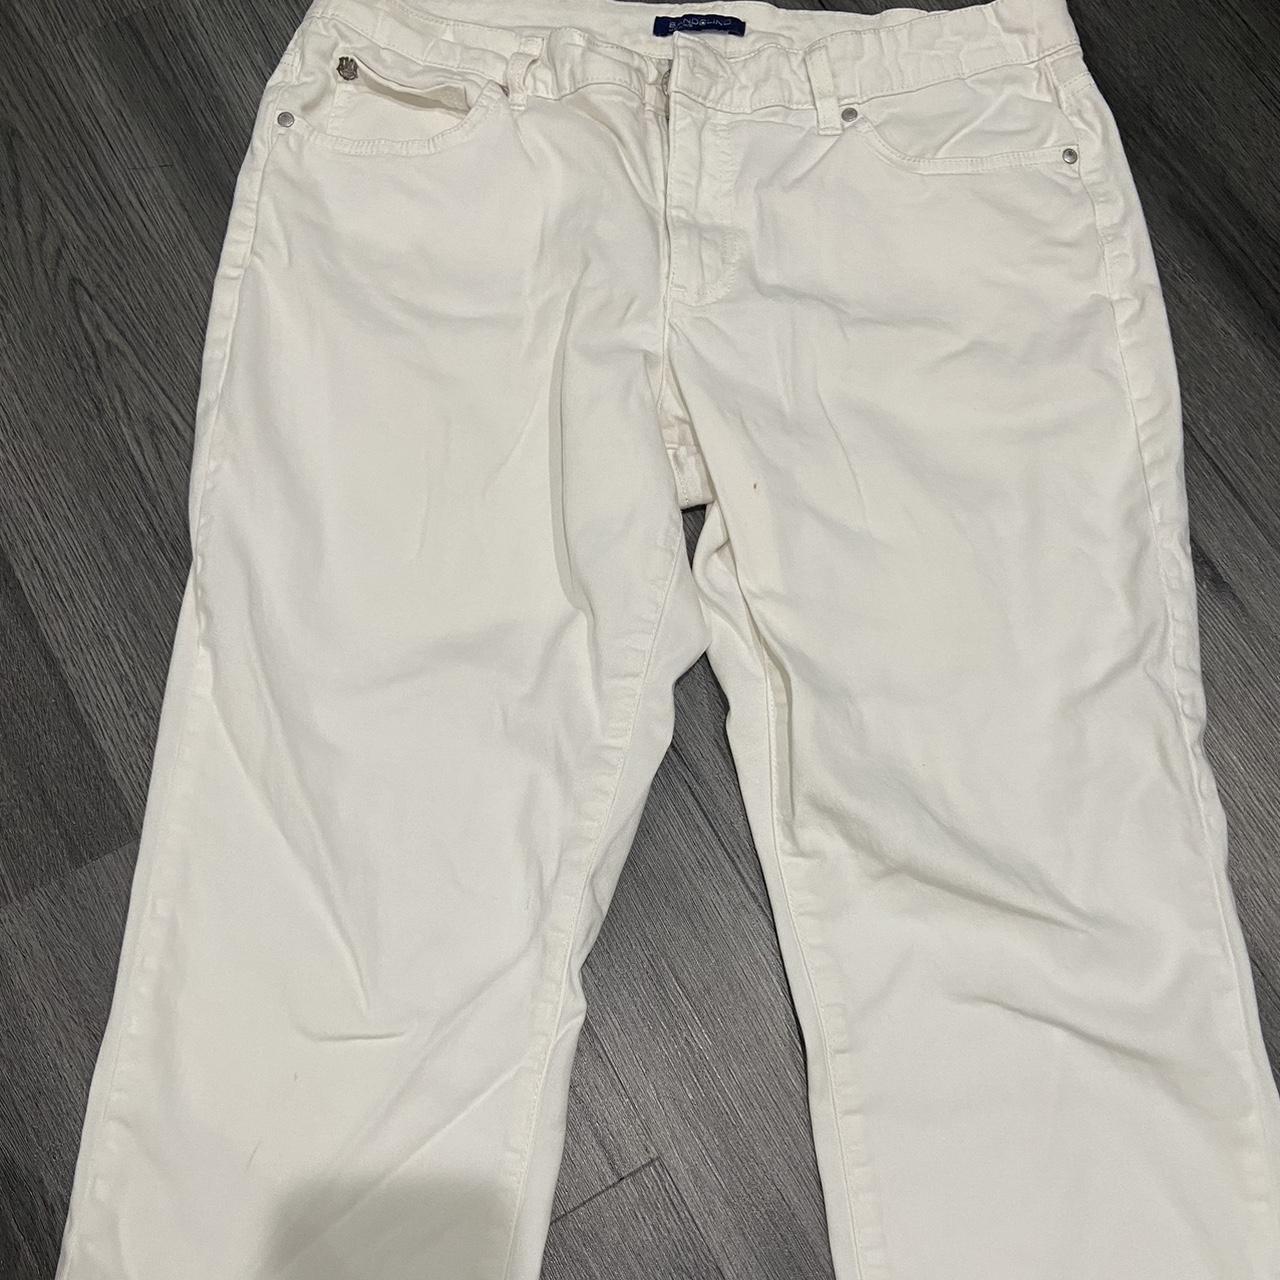 Bandolino Women's White Jeans